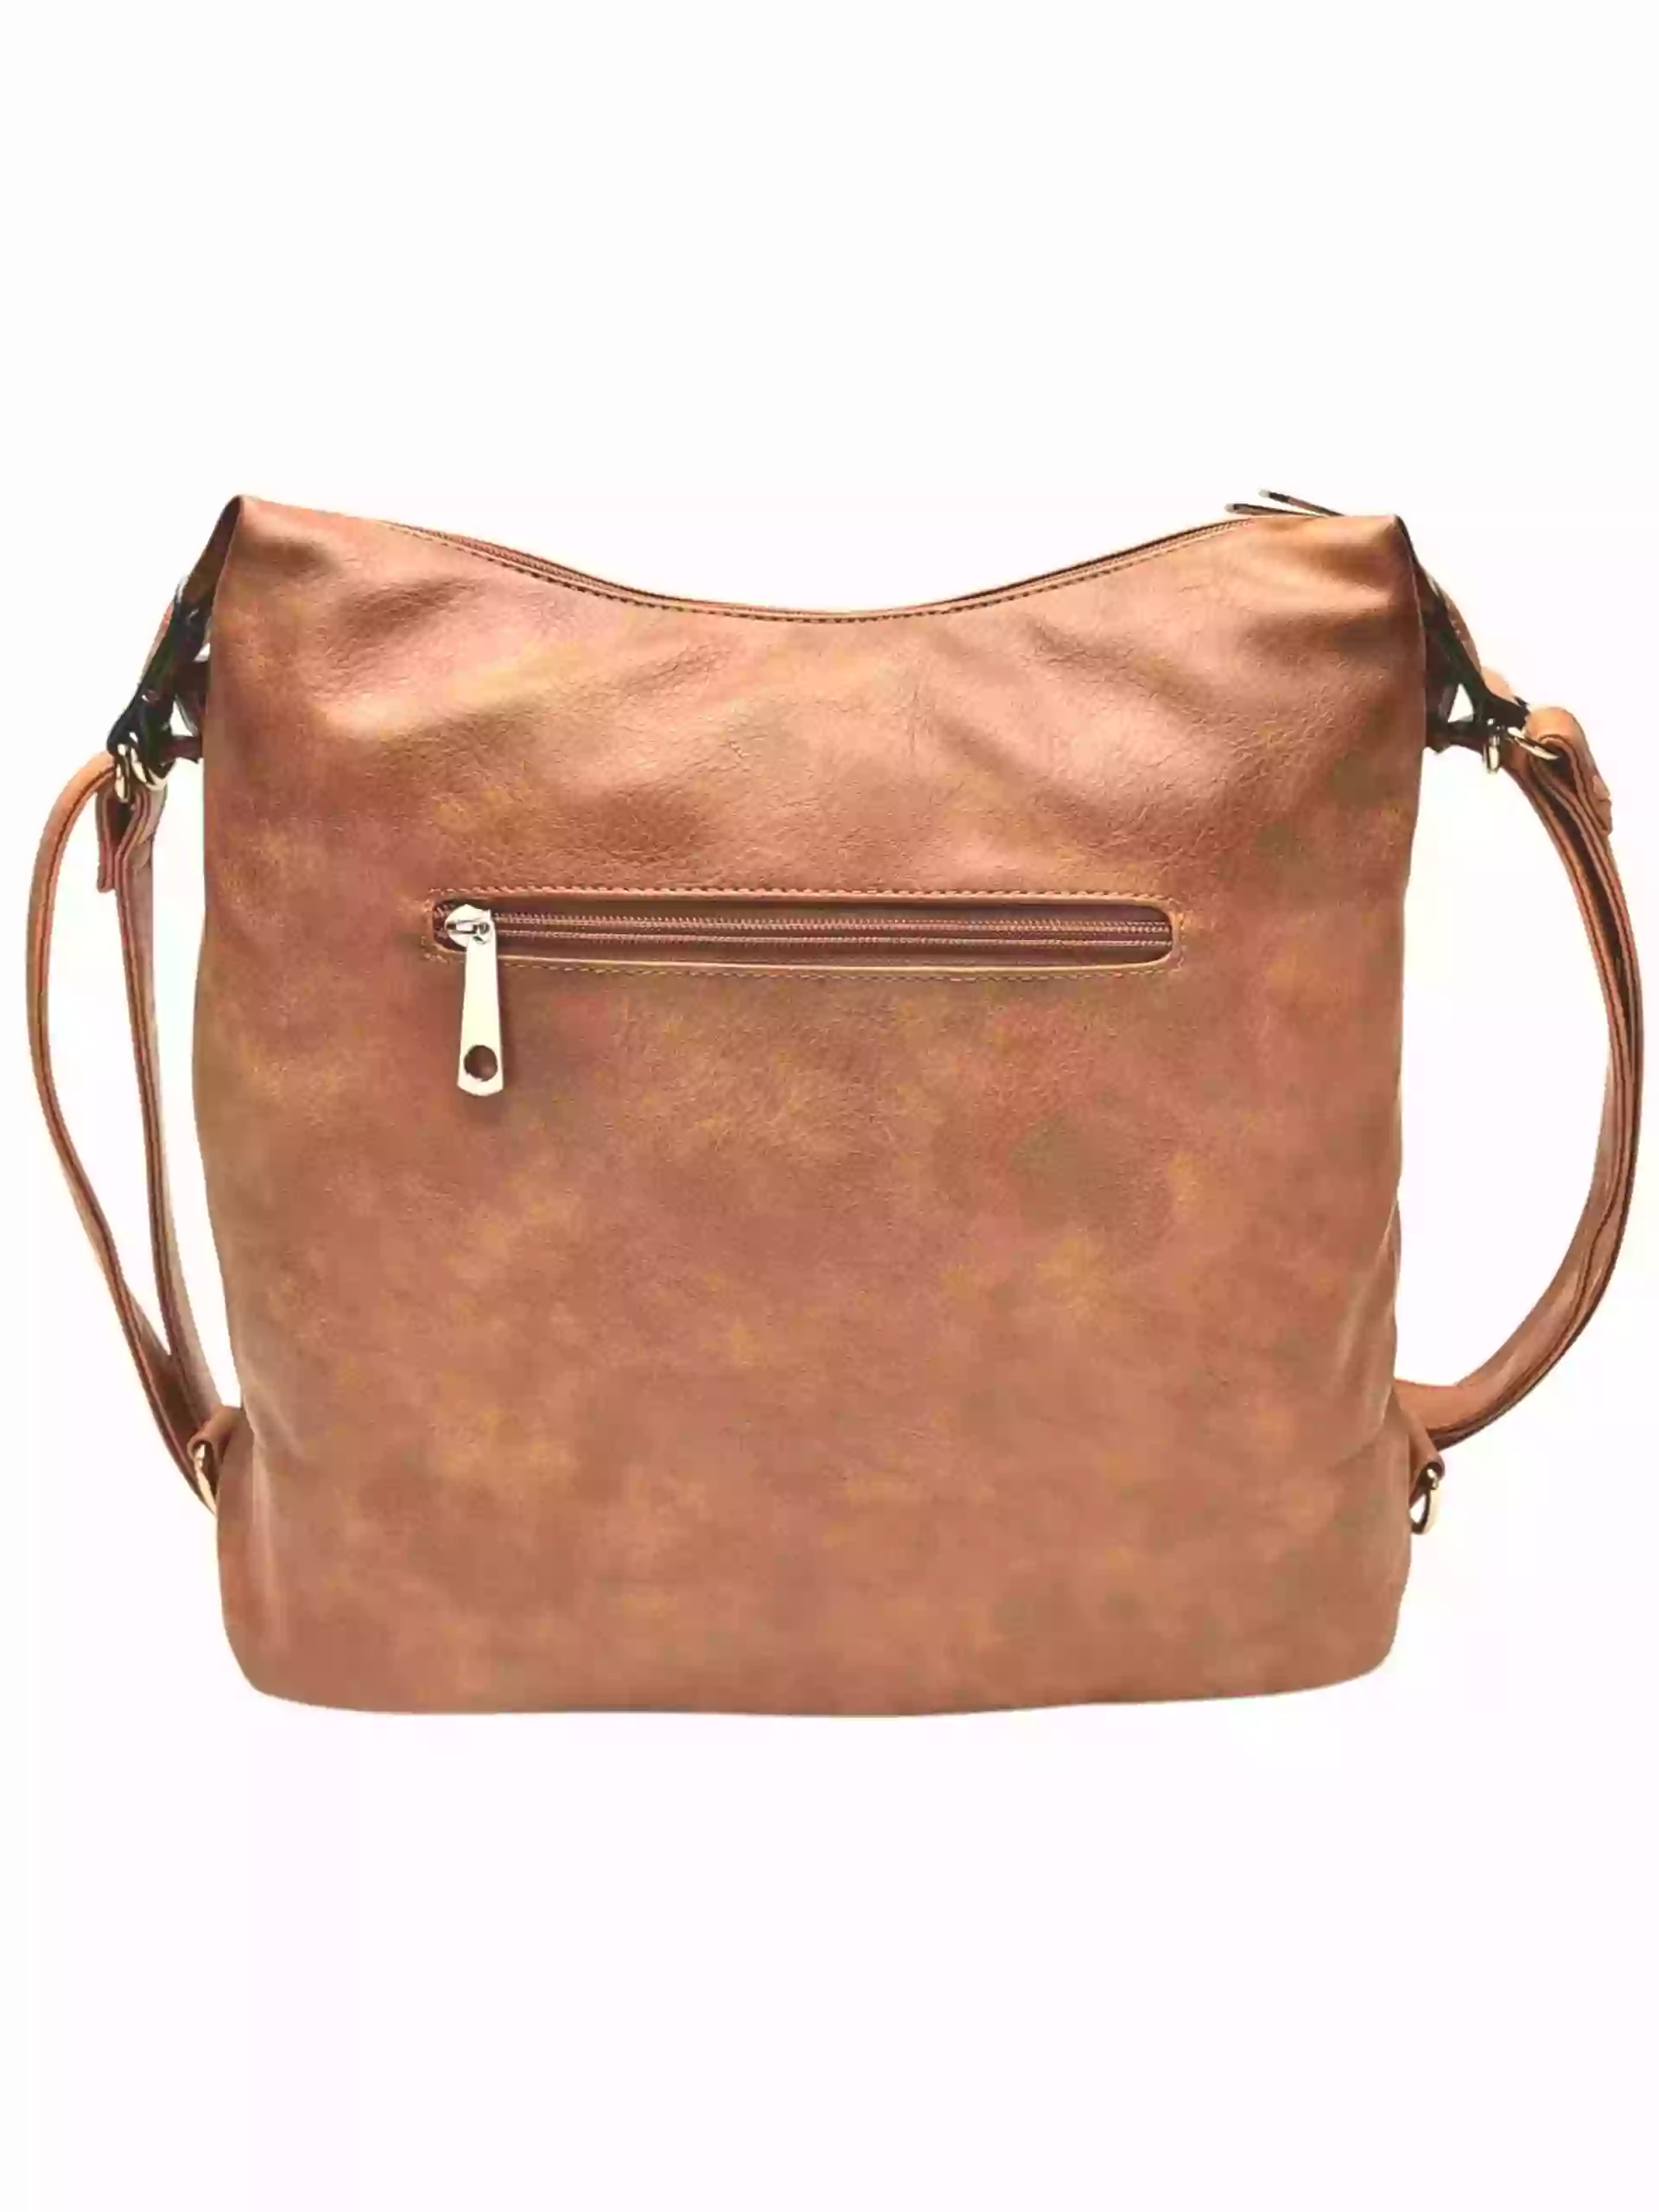 Velký středně hnědý kabelko-batoh 2v1 s praktickou kapsou, Tapple, H190010N, zadní strana kabelko-batohu 2v1